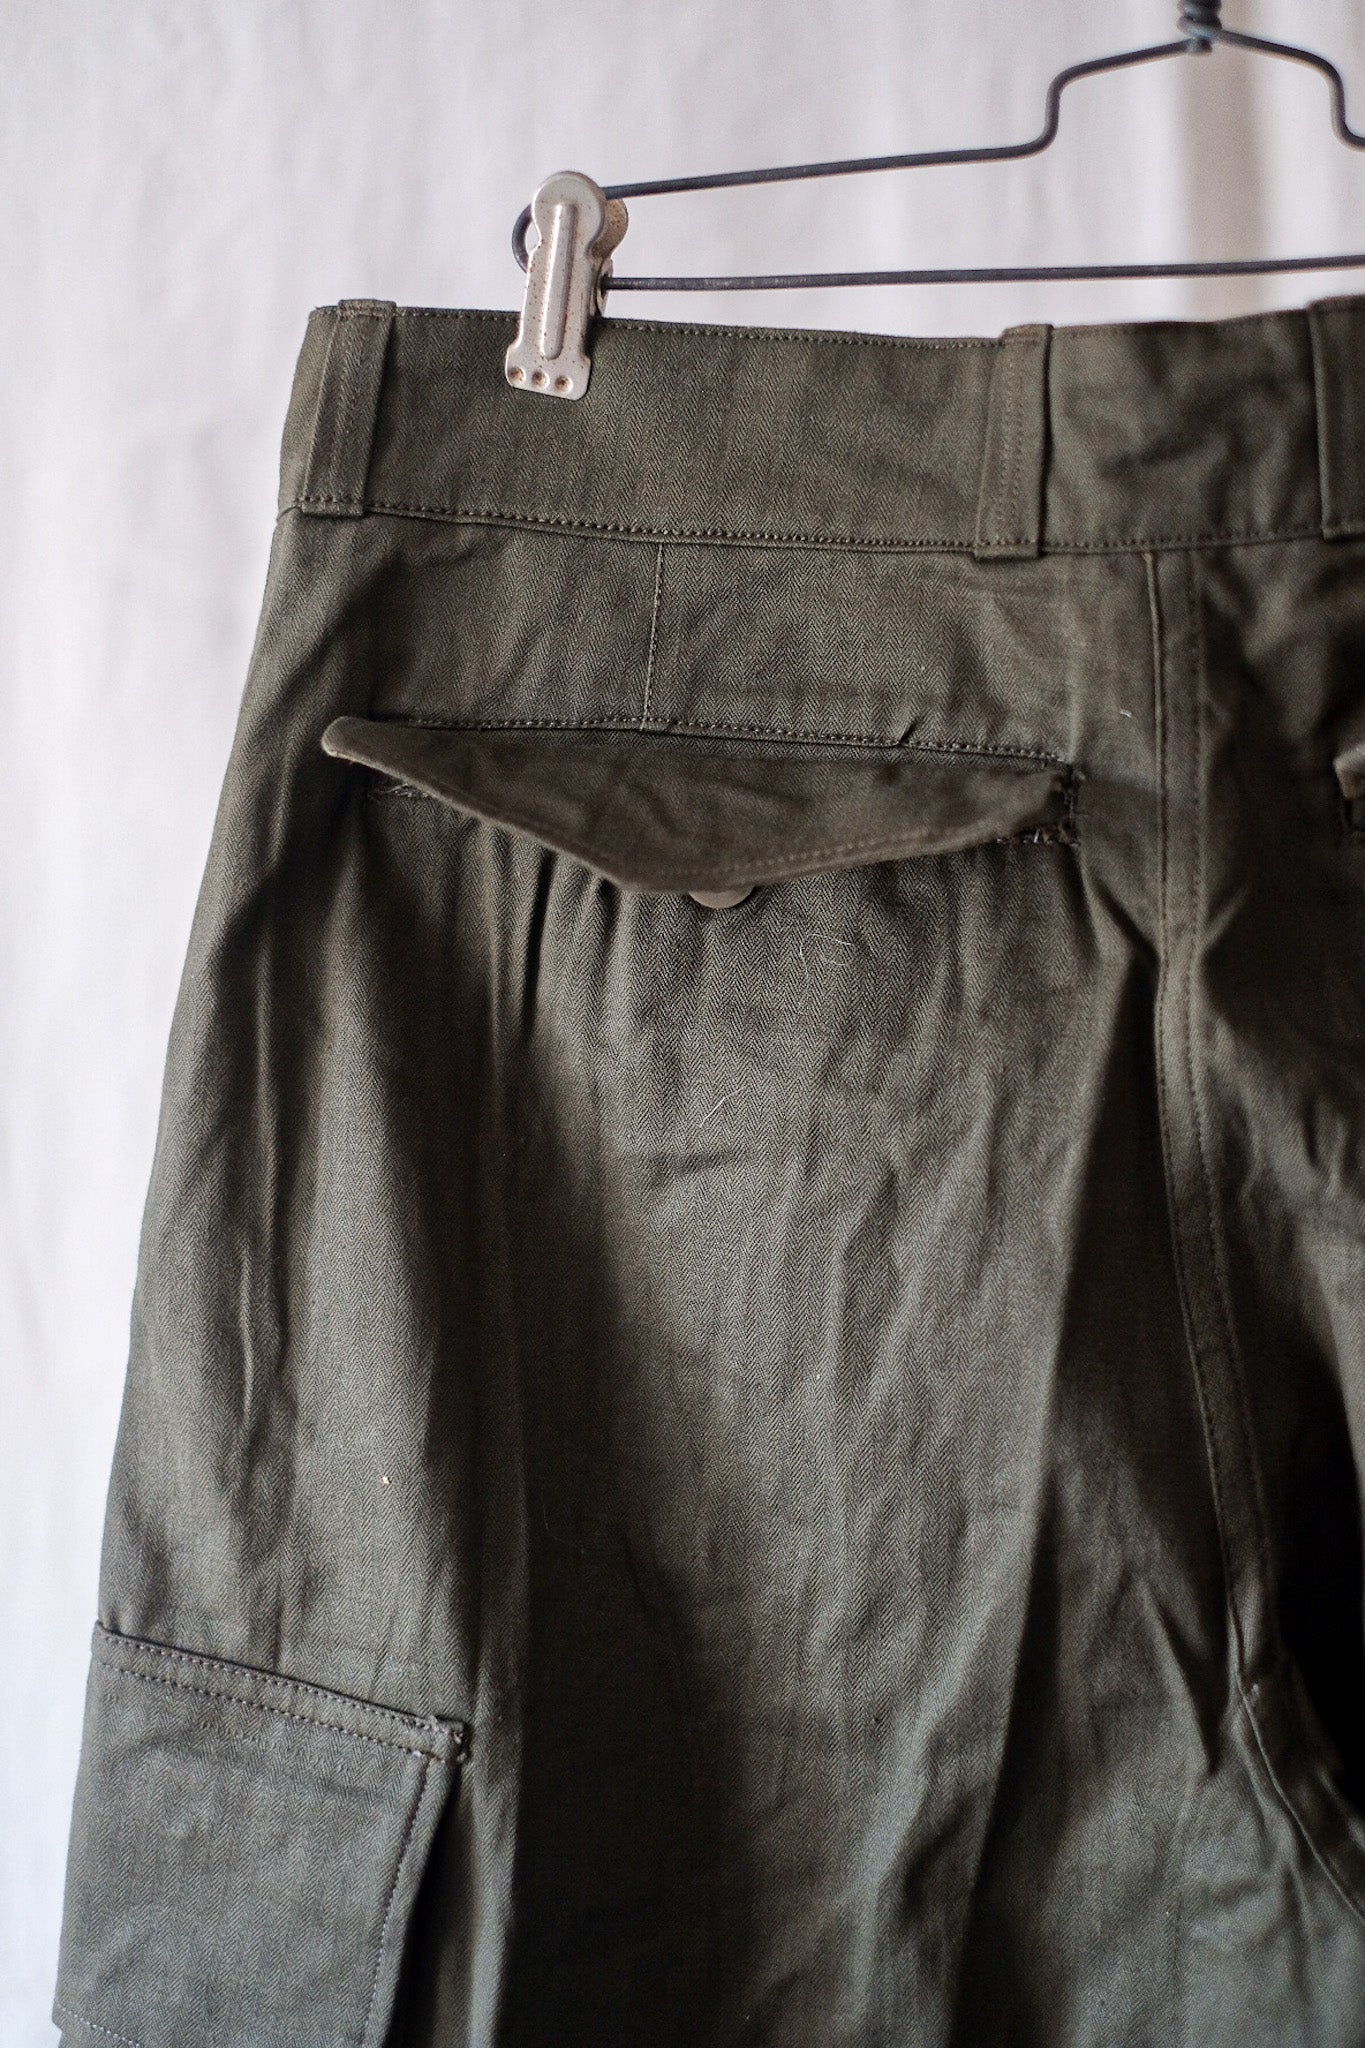 [〜60年代]法國陸軍M47野外褲子的大小。31“死股”